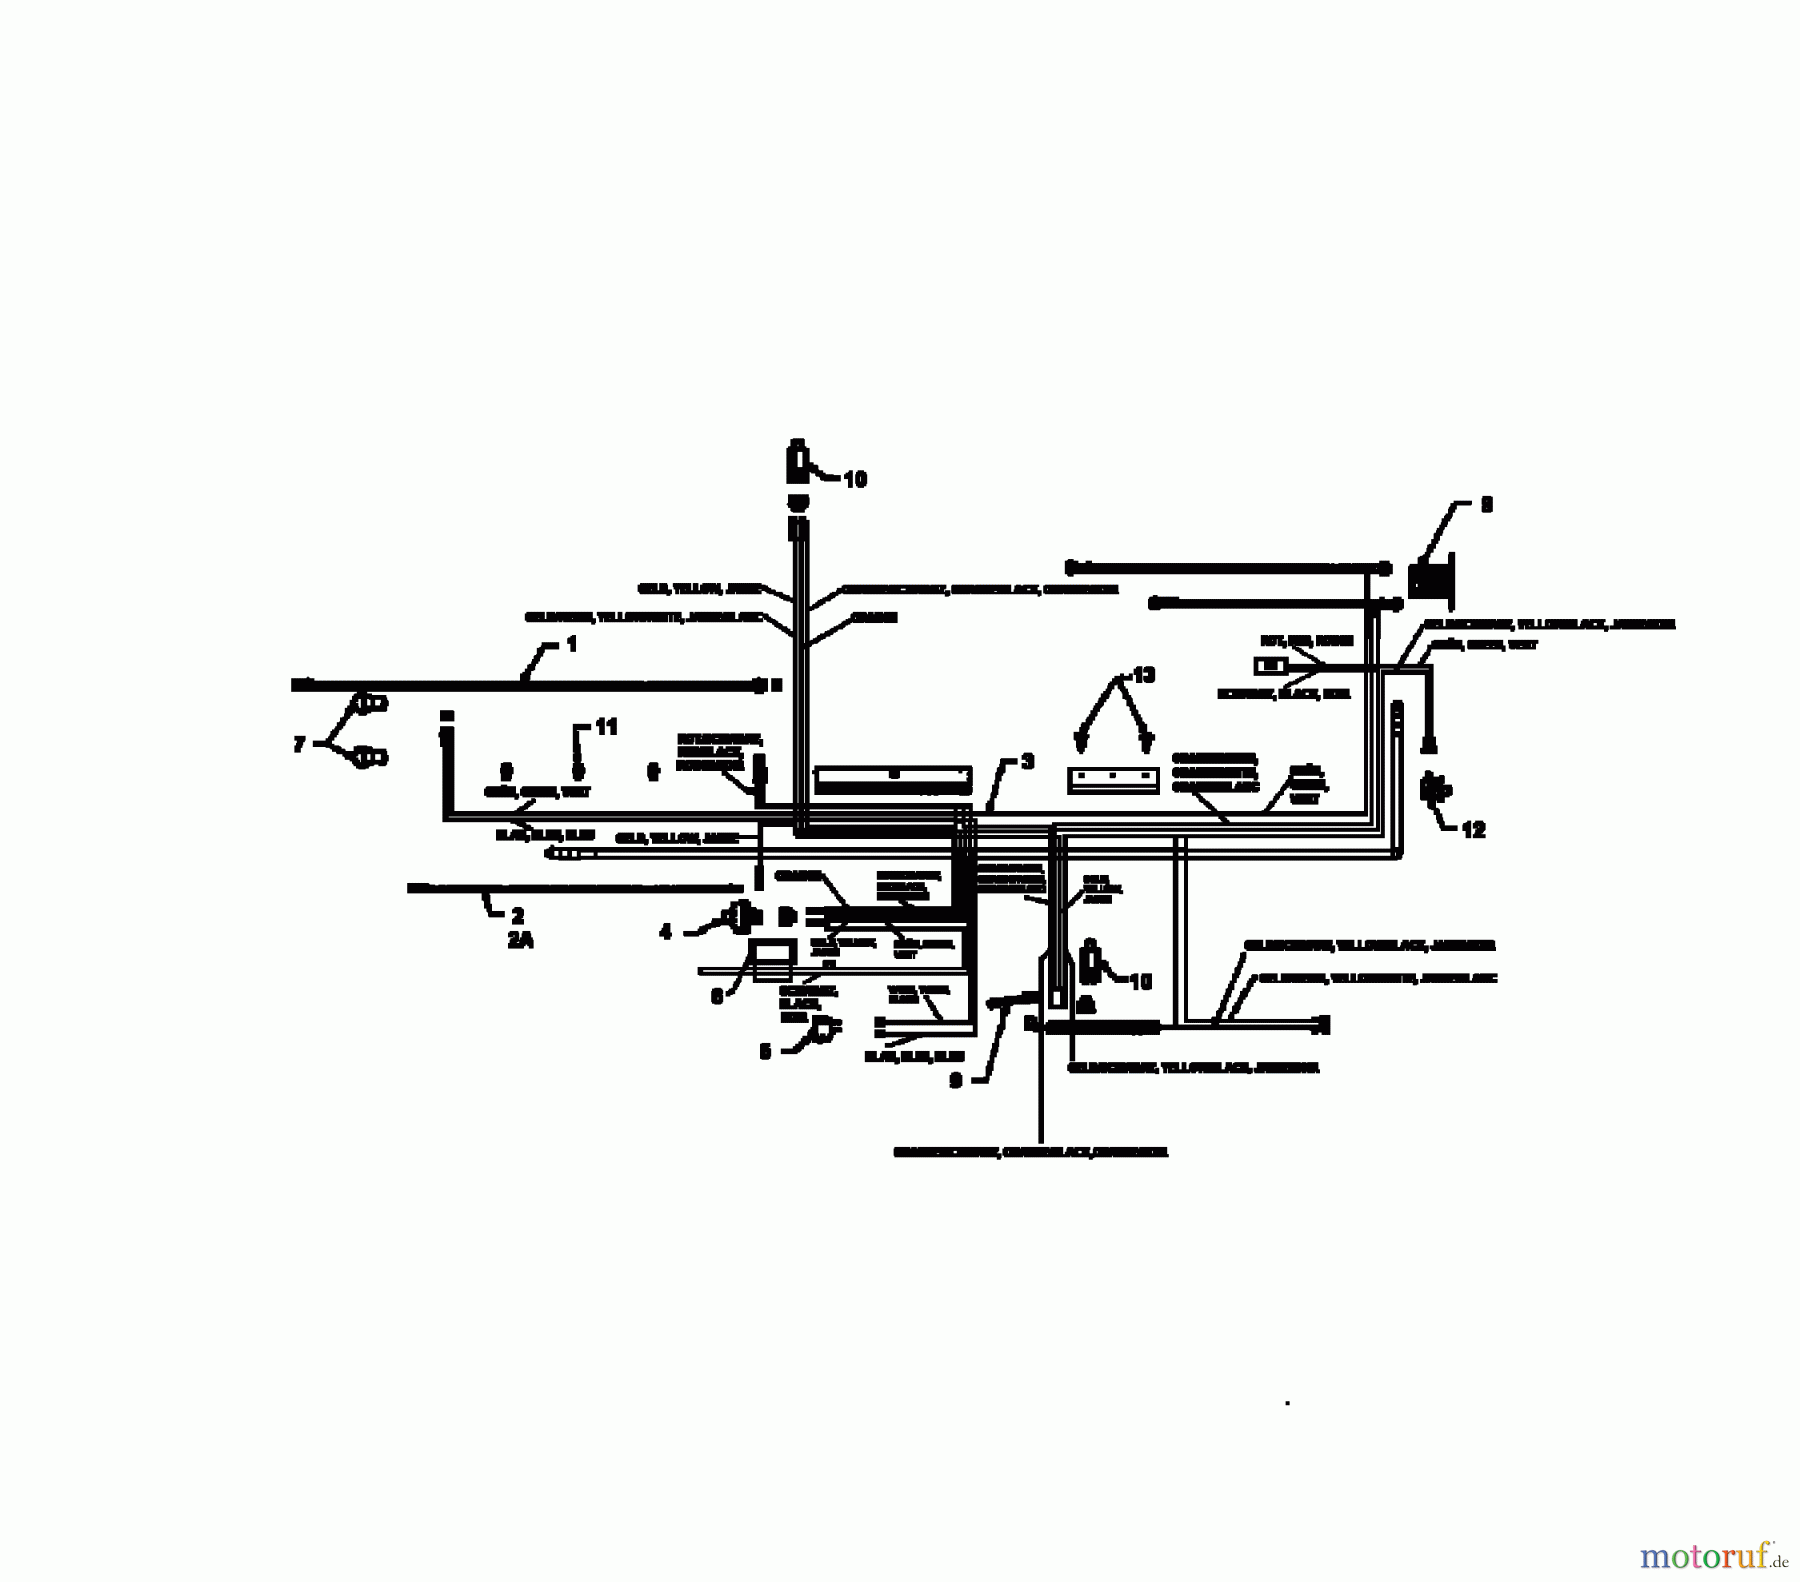  MTD Lawn tractors E 125 13AL760N678  (1997) Wiring diagram Vanguard